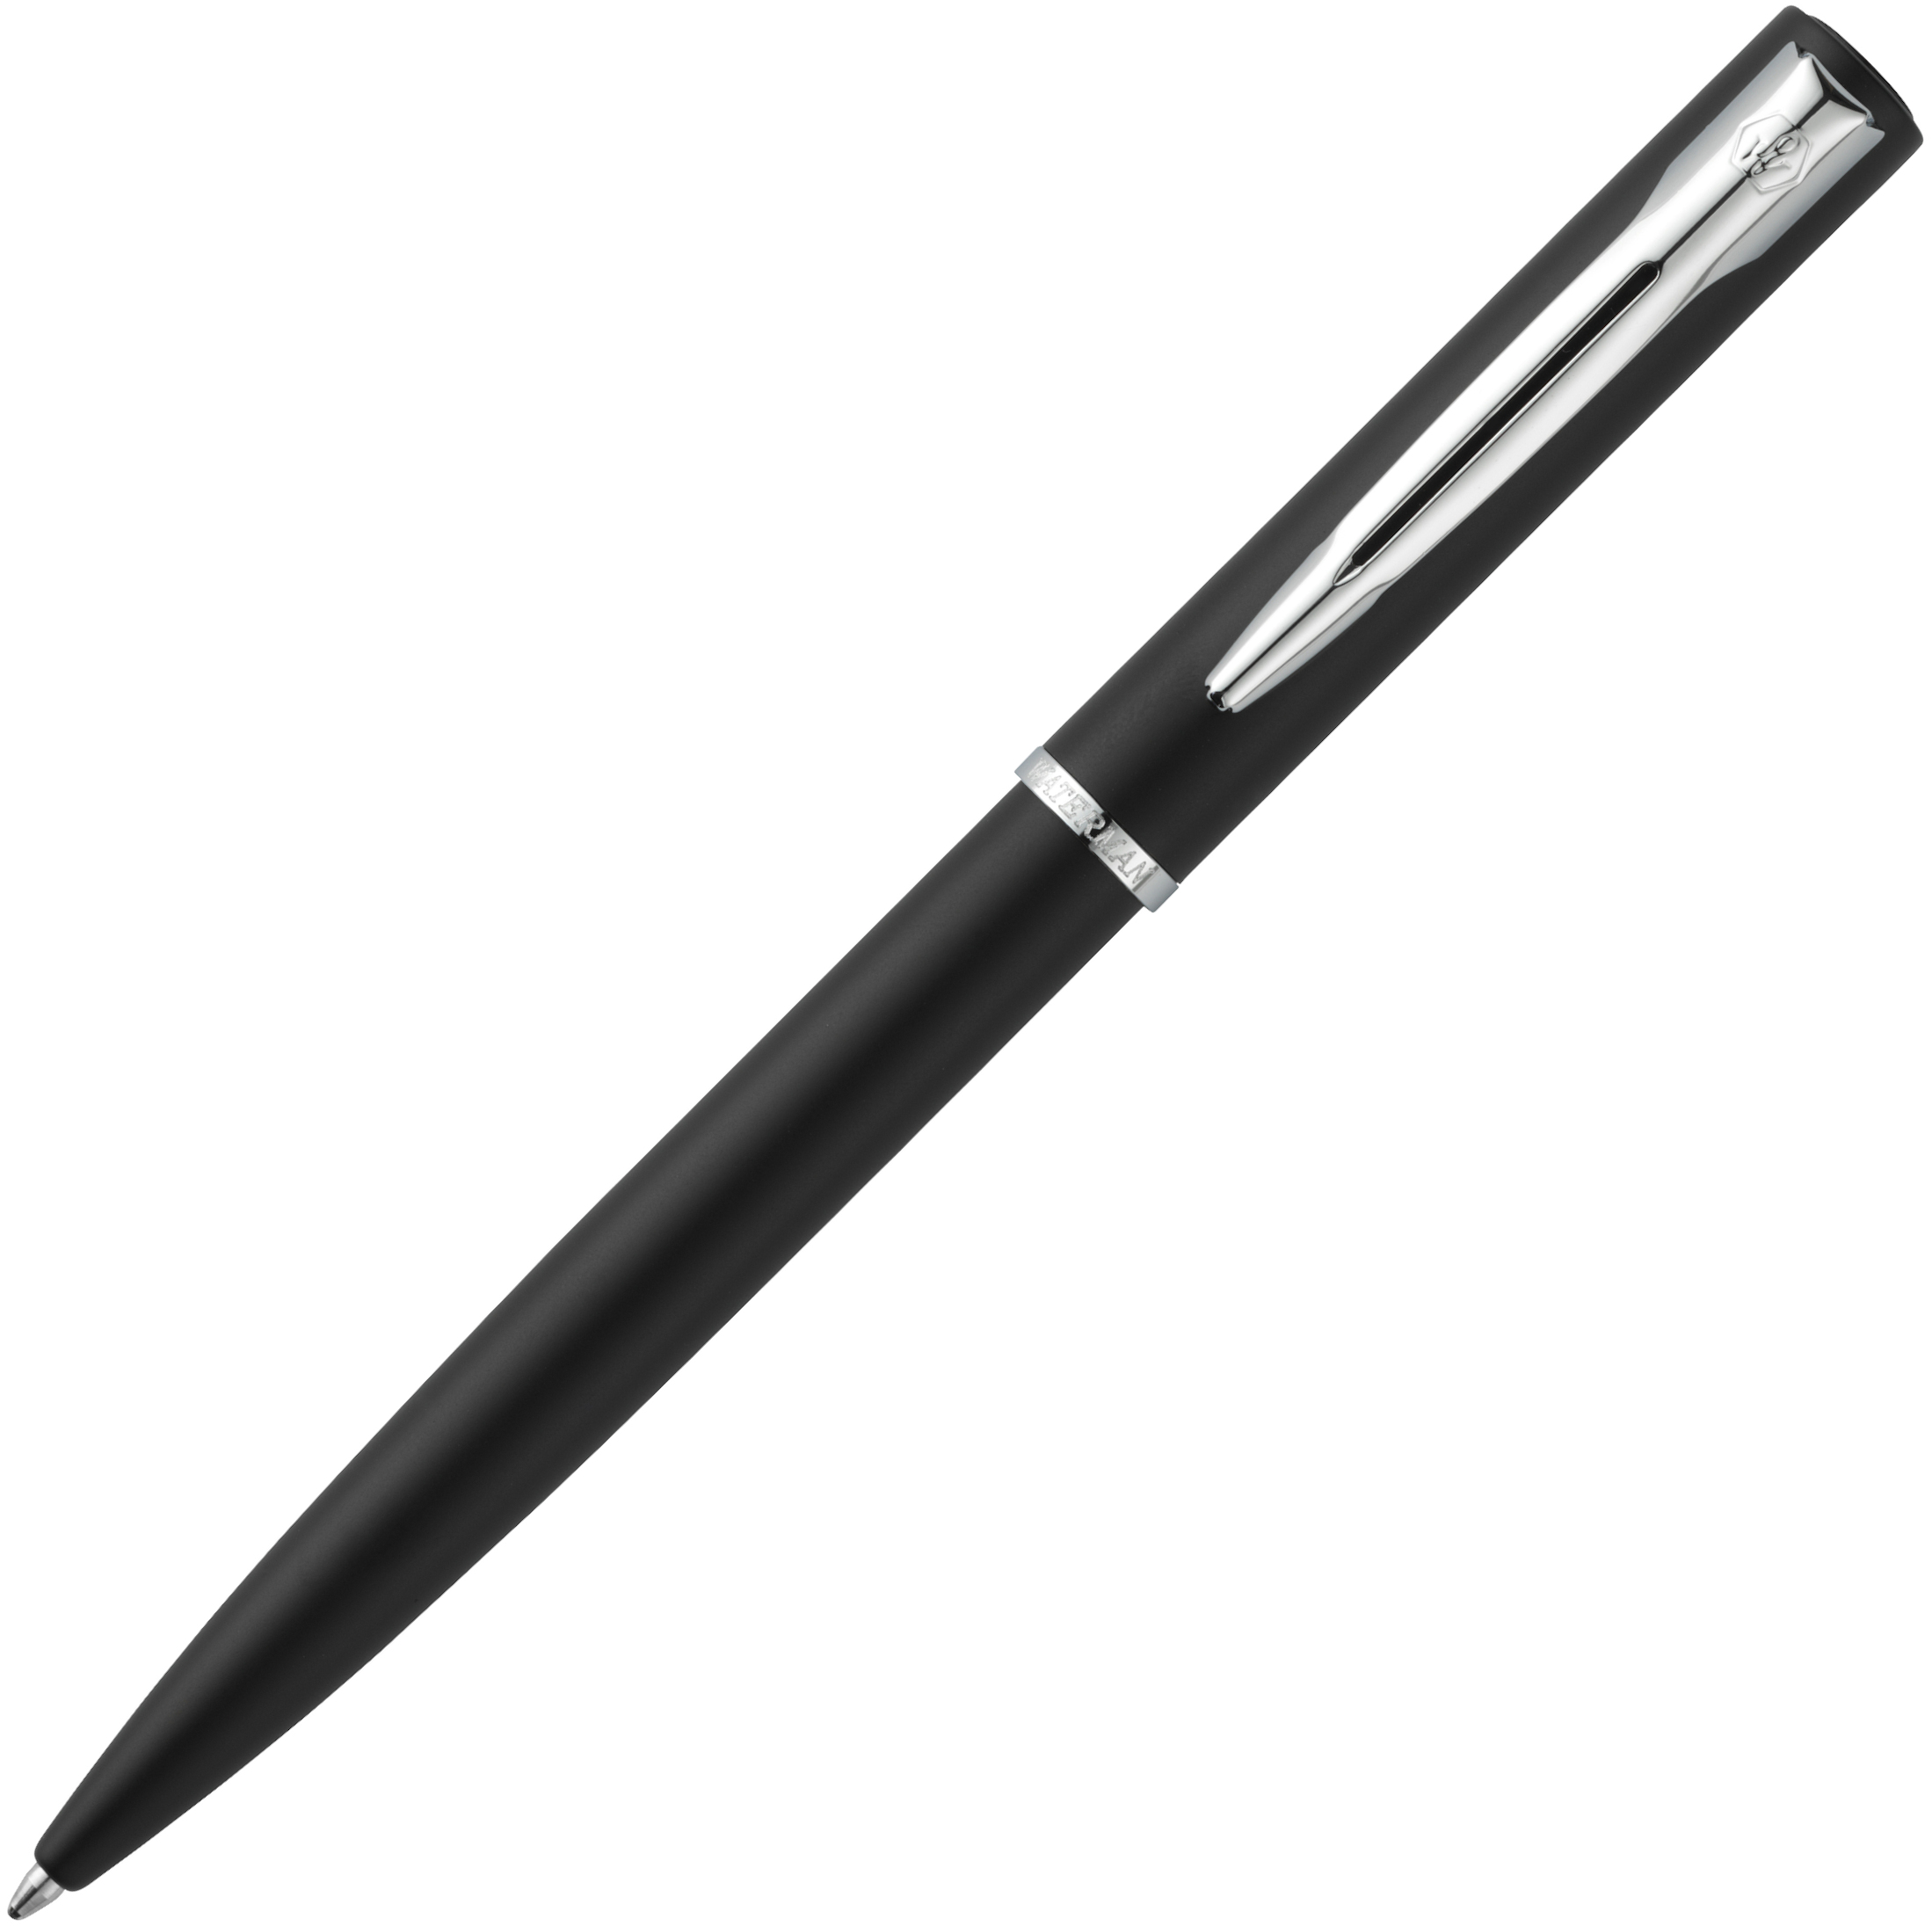 Waterman Allure ballpoint pen